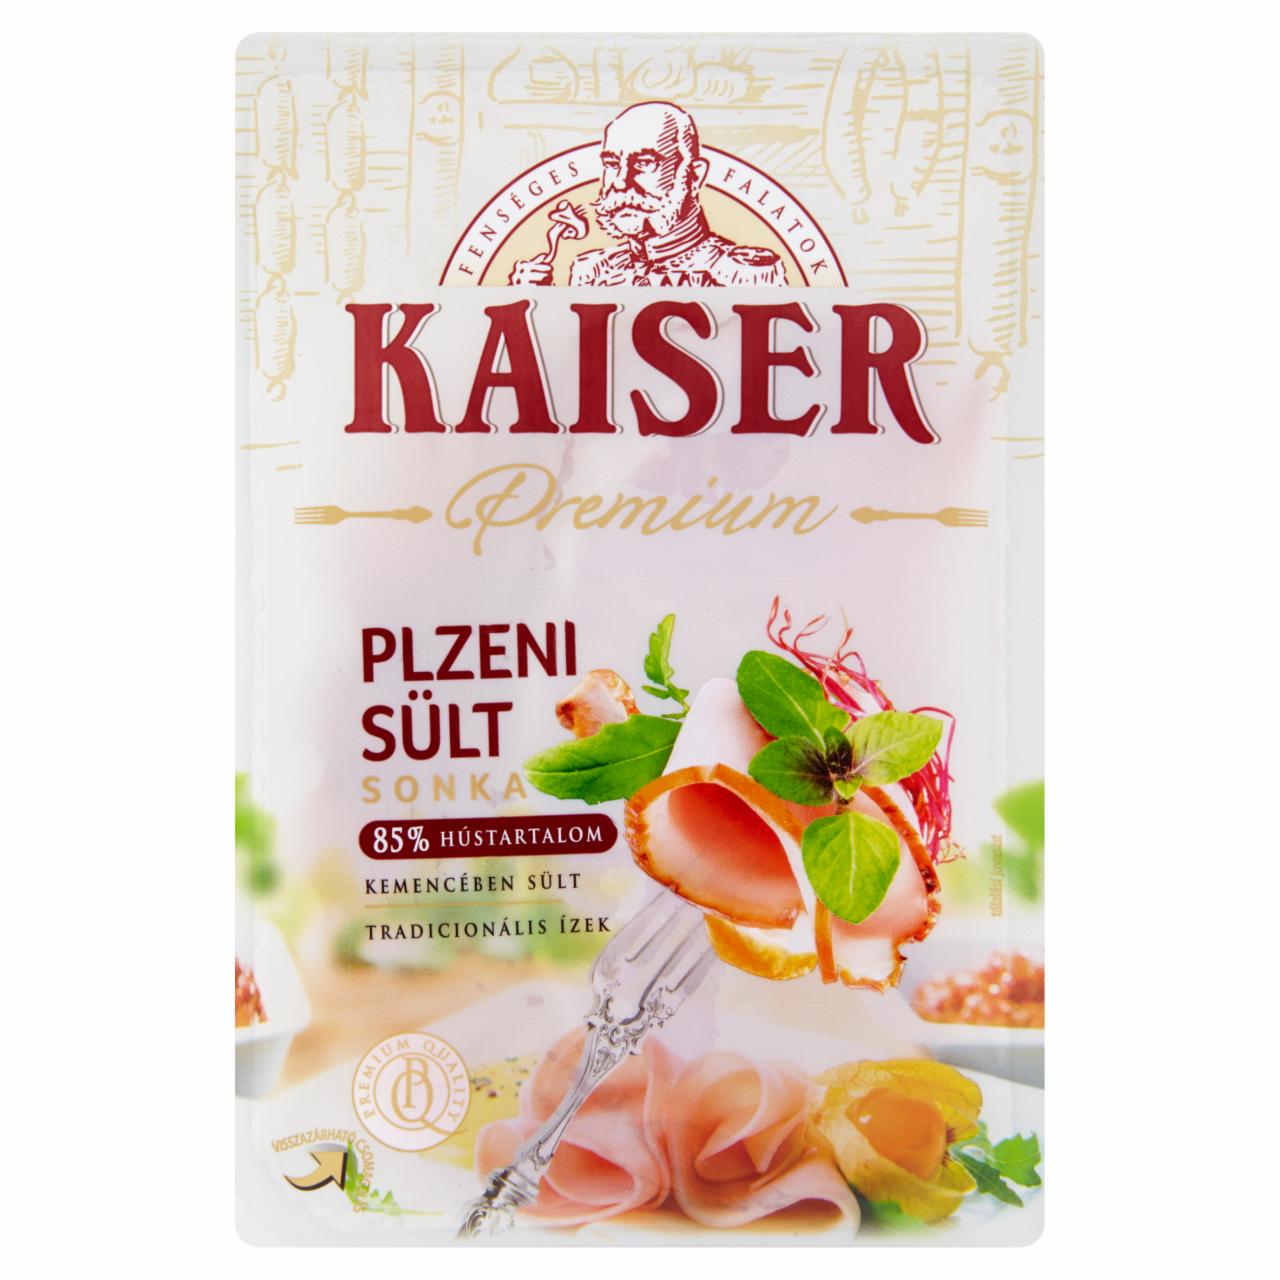 Képek - Kaiser Premium Plzeni sült sonka 100 g